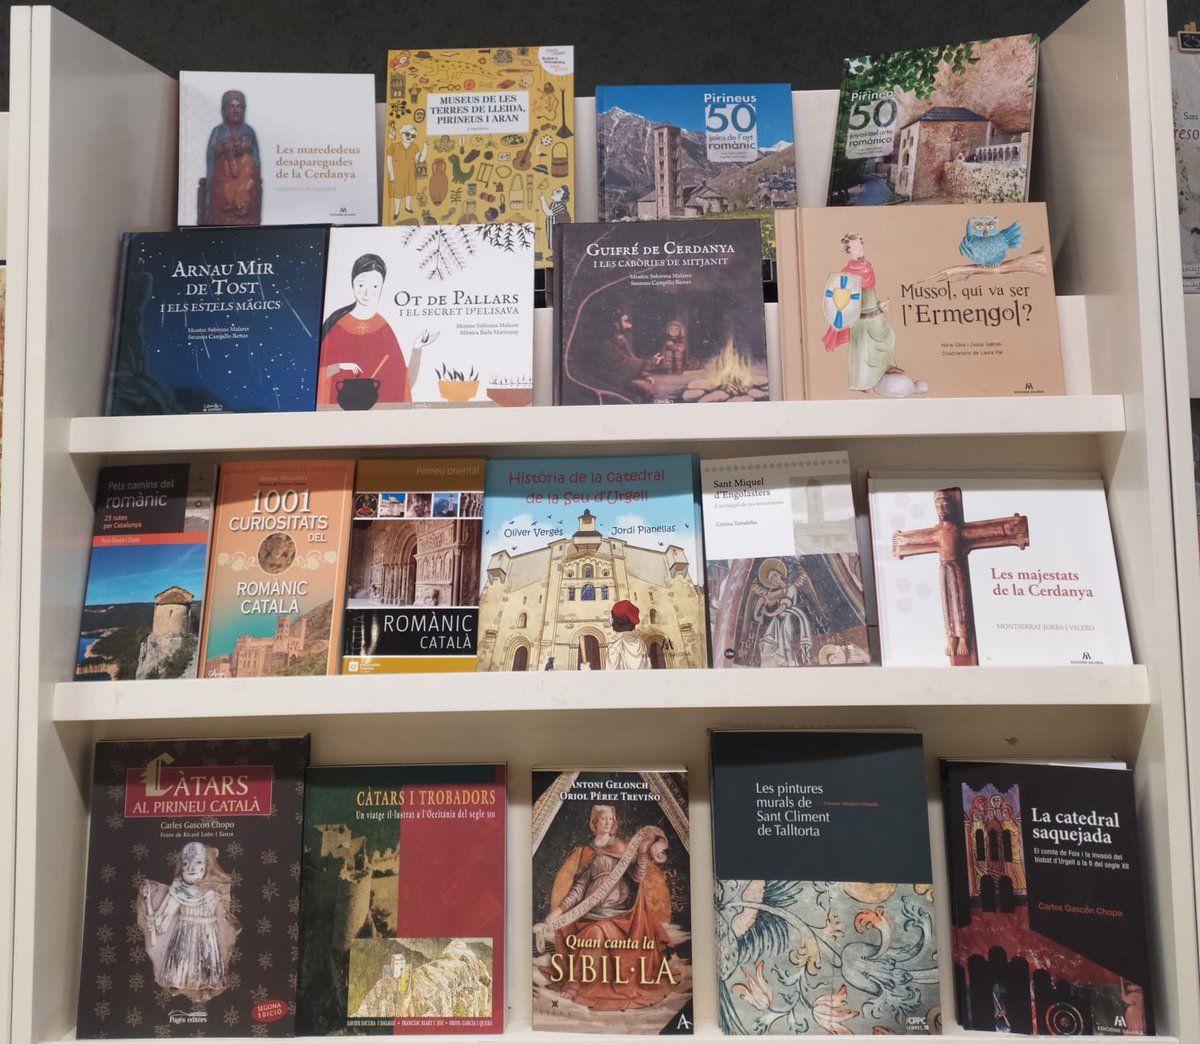 Mireu la nova col·lecció de #llibres📚 que podreu trobar a la nostra botiga! 

Veniu a donar-hi un cop d’ull i descobrireu guies del #romànic, #llibresinfantils o estudis d’ #art i #història del nostre territori.